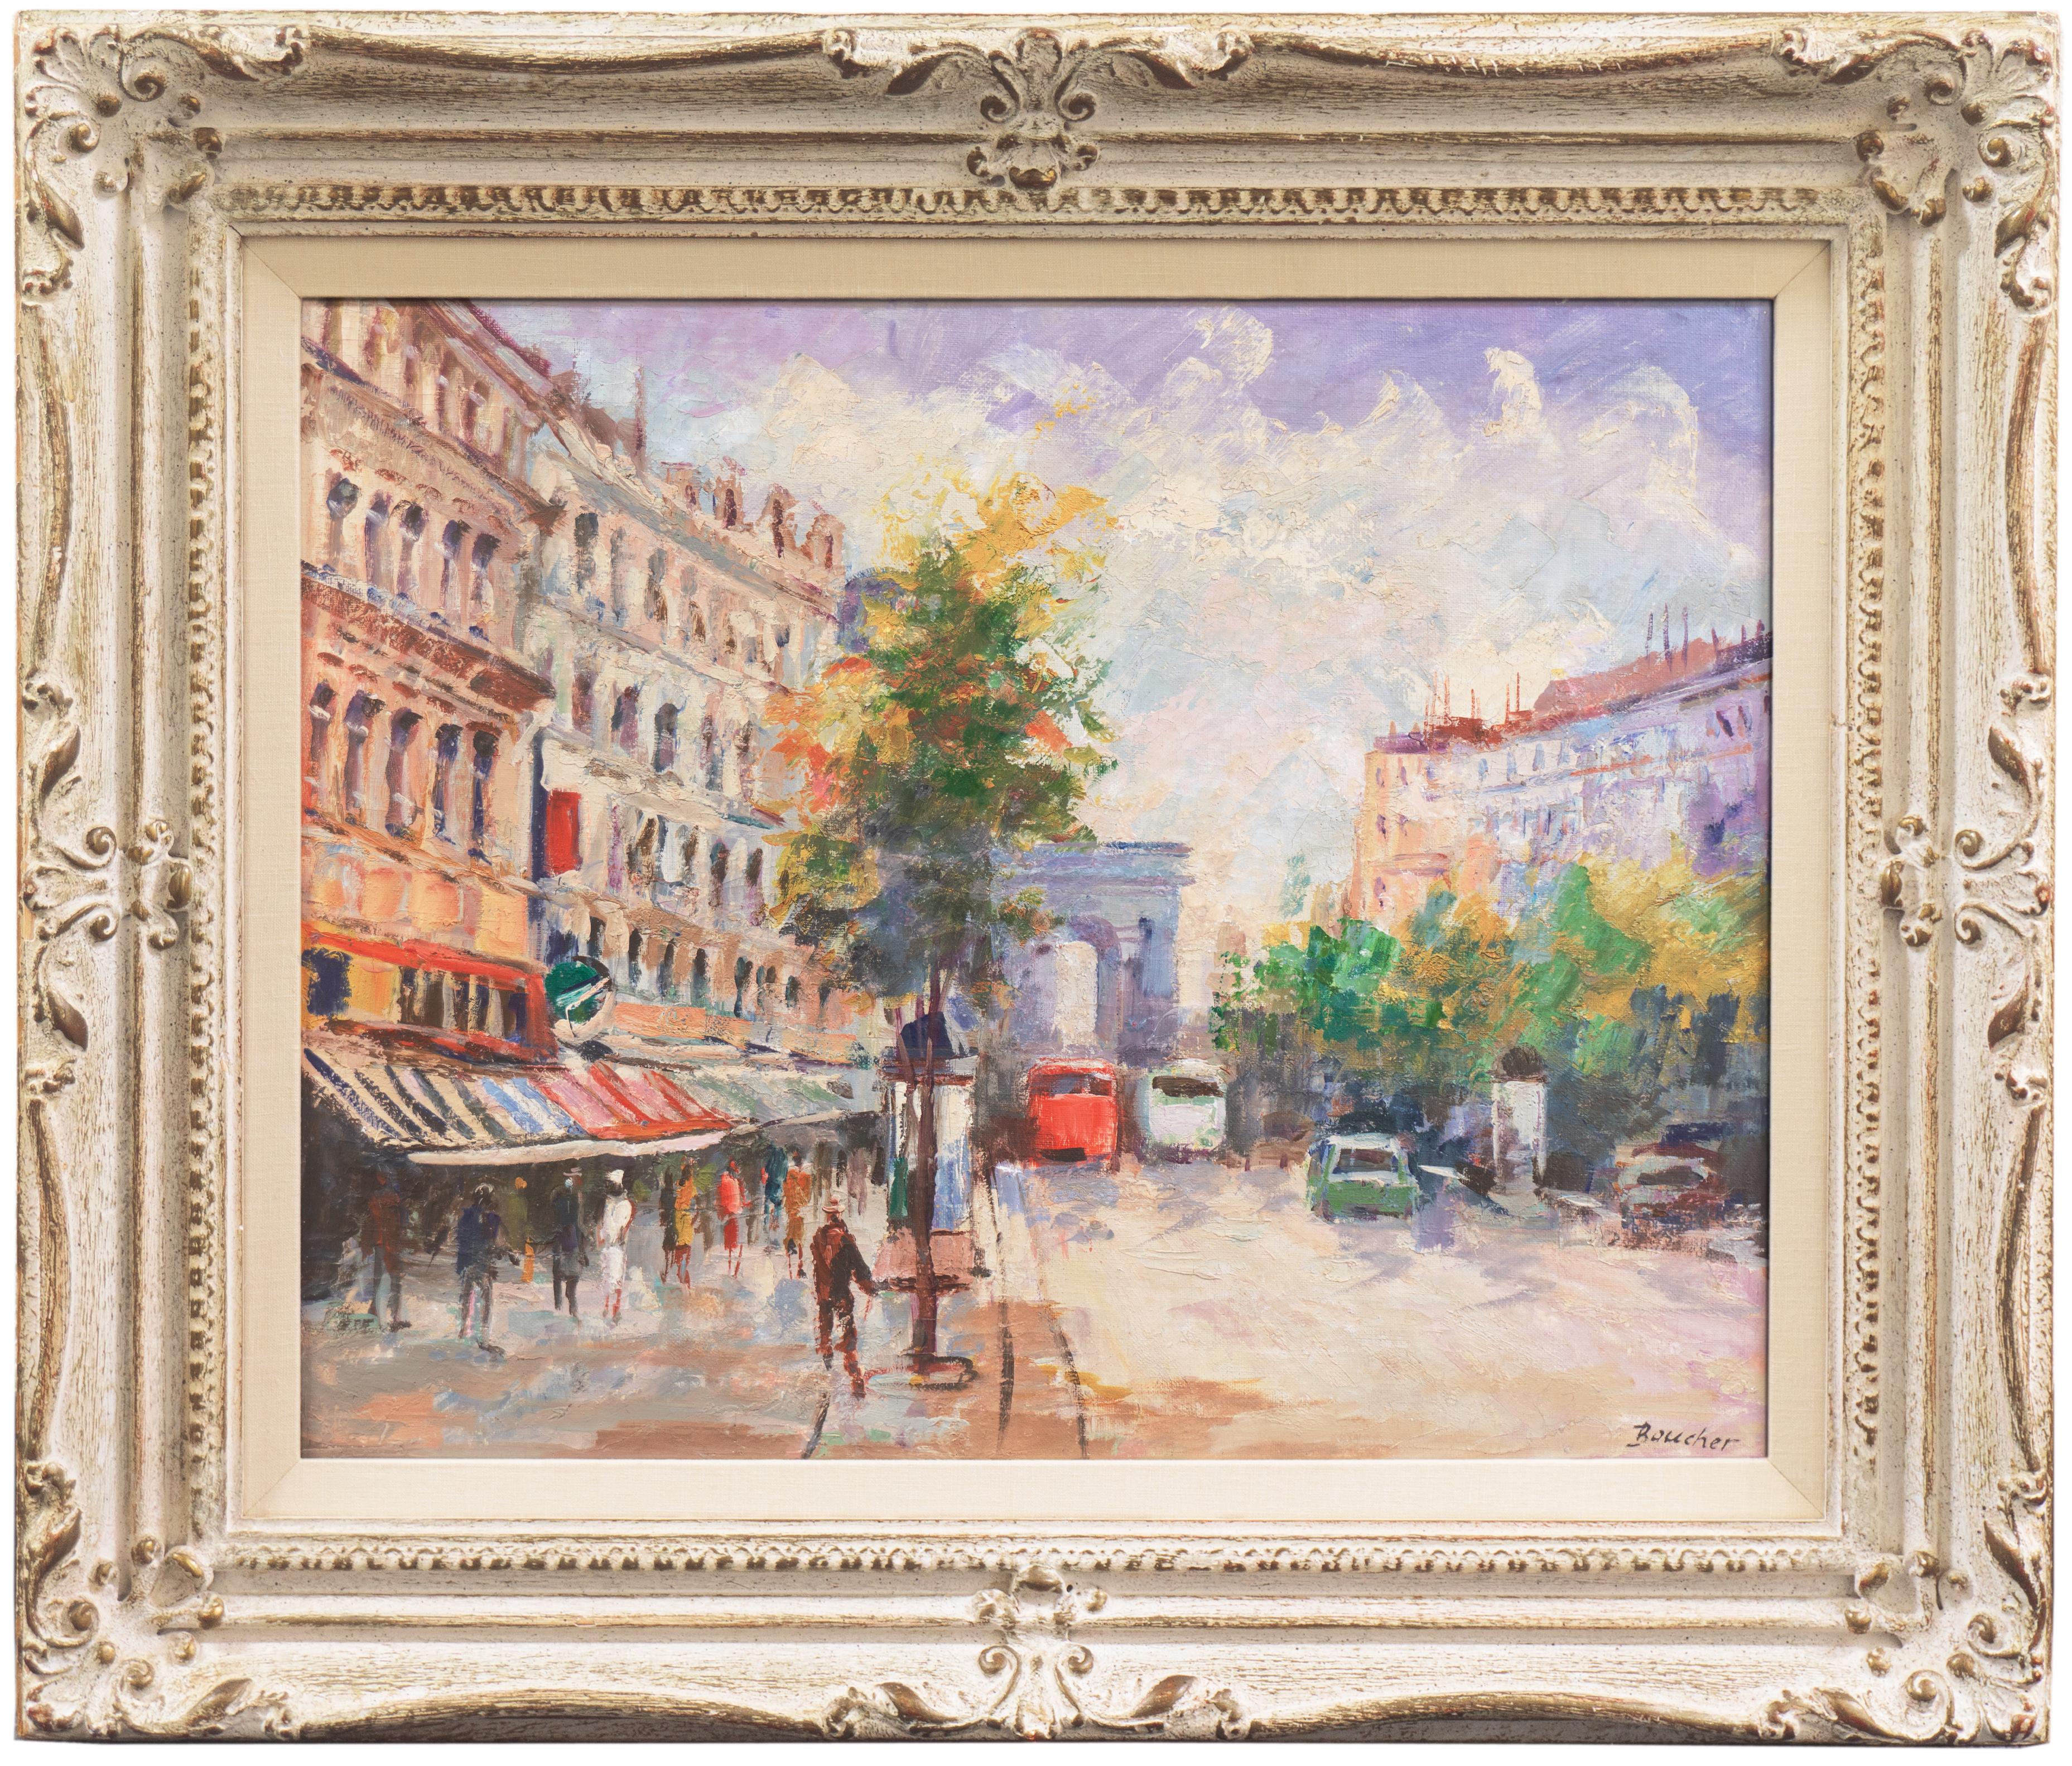 'The Arc de Triomphe from the Champs-Élysées', Paris, France, Post-Impressionist - Painting by Boucher